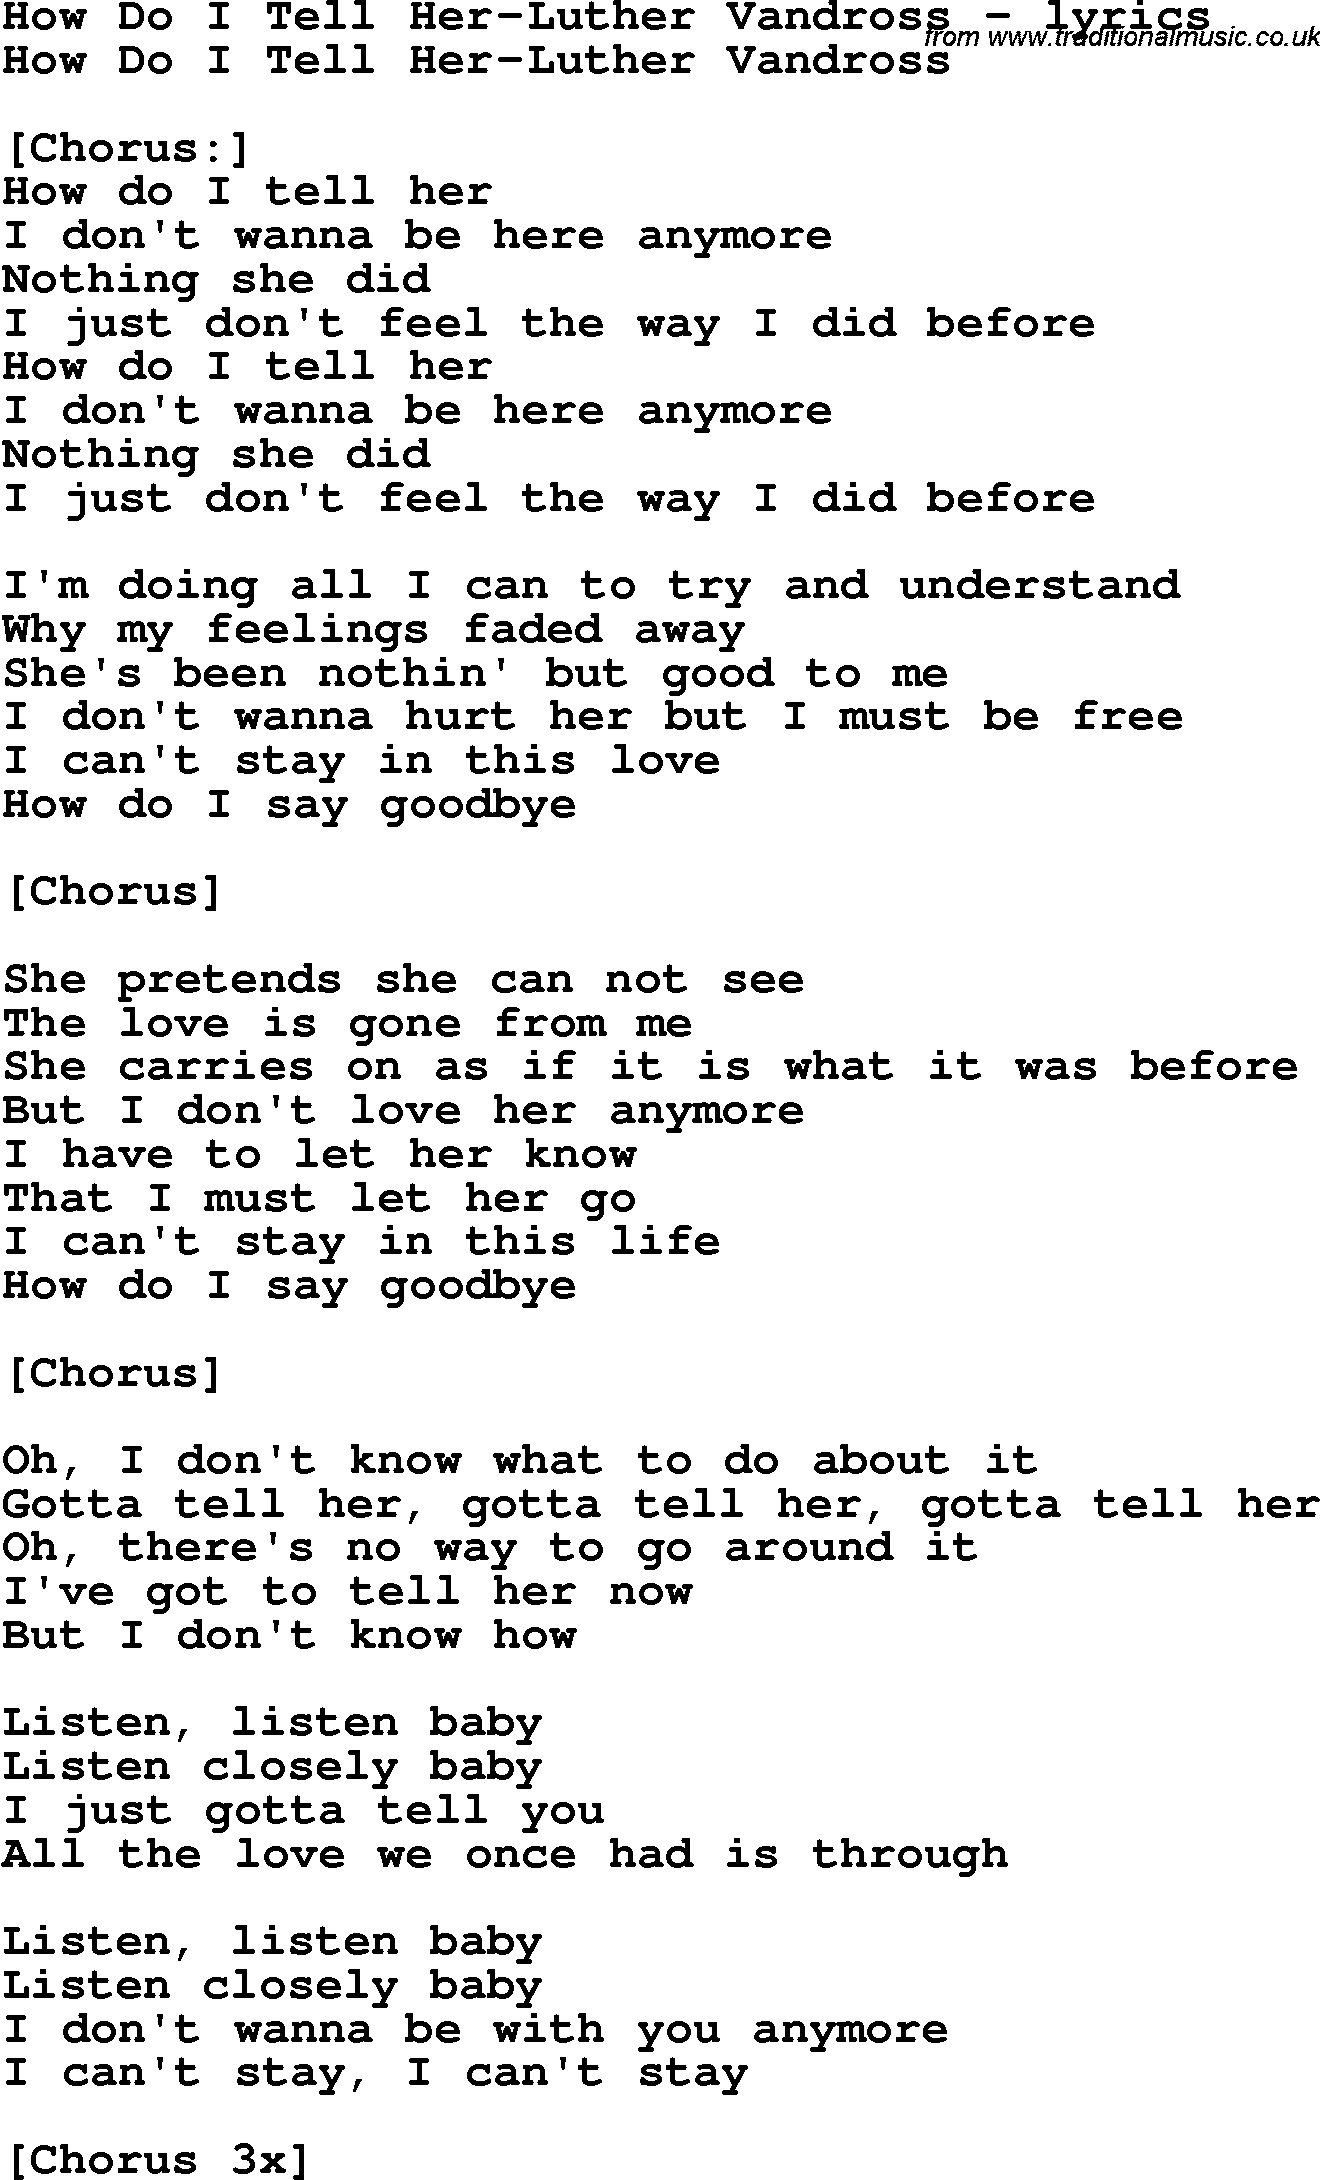 Love Song Lyrics for: How Do I Tell Her-Luther Vandross